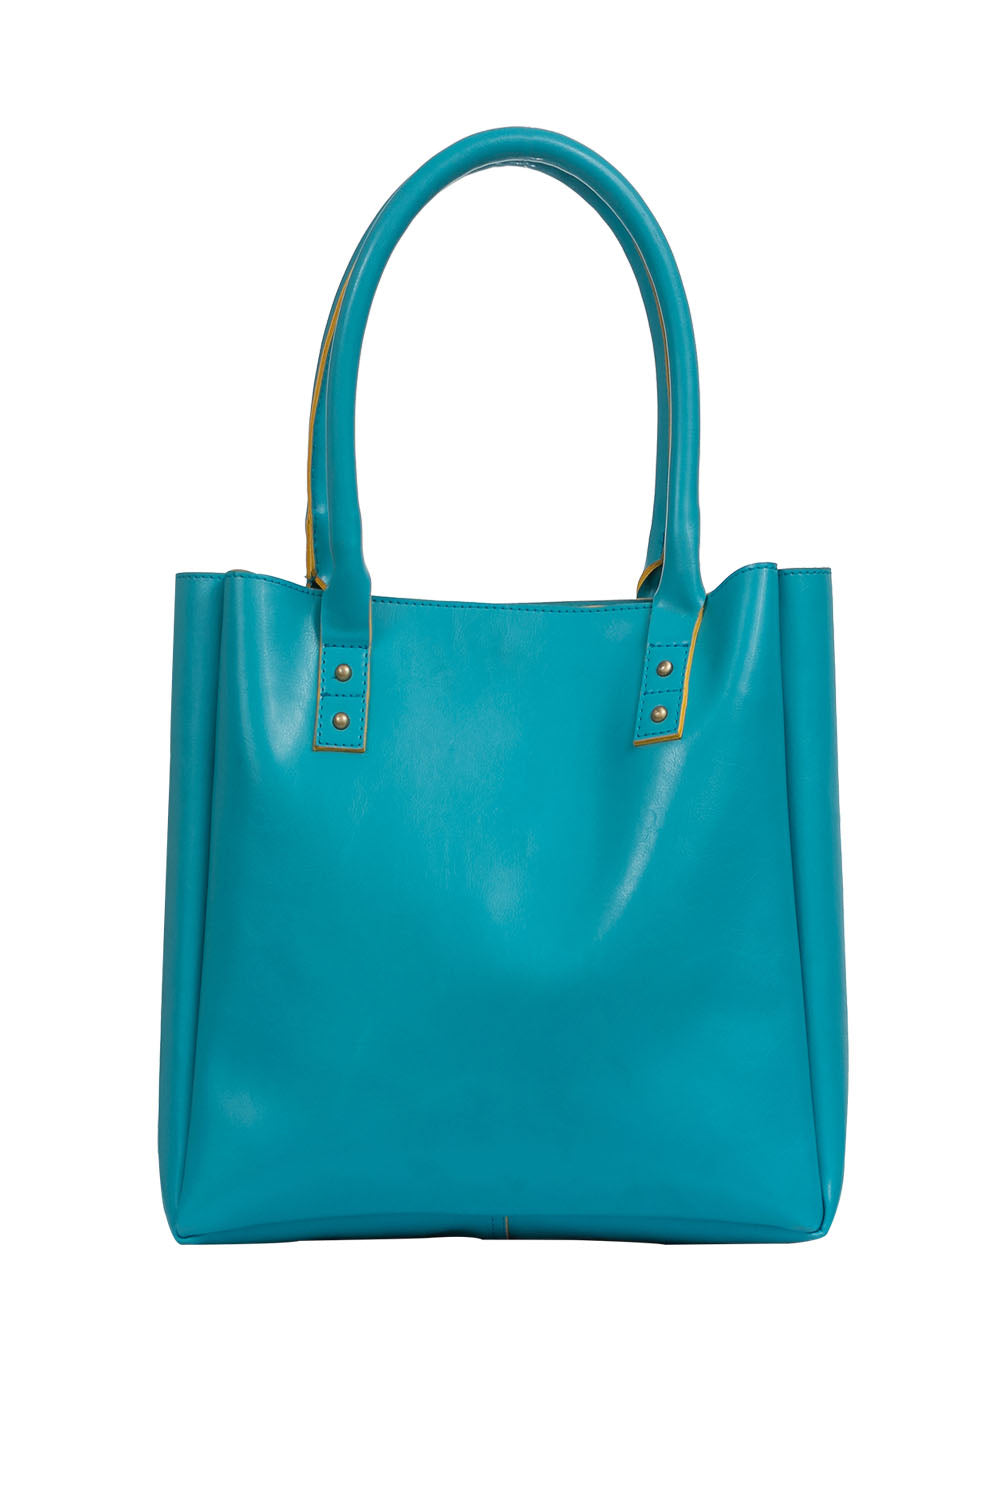 Blue Vibrant Tote Bag